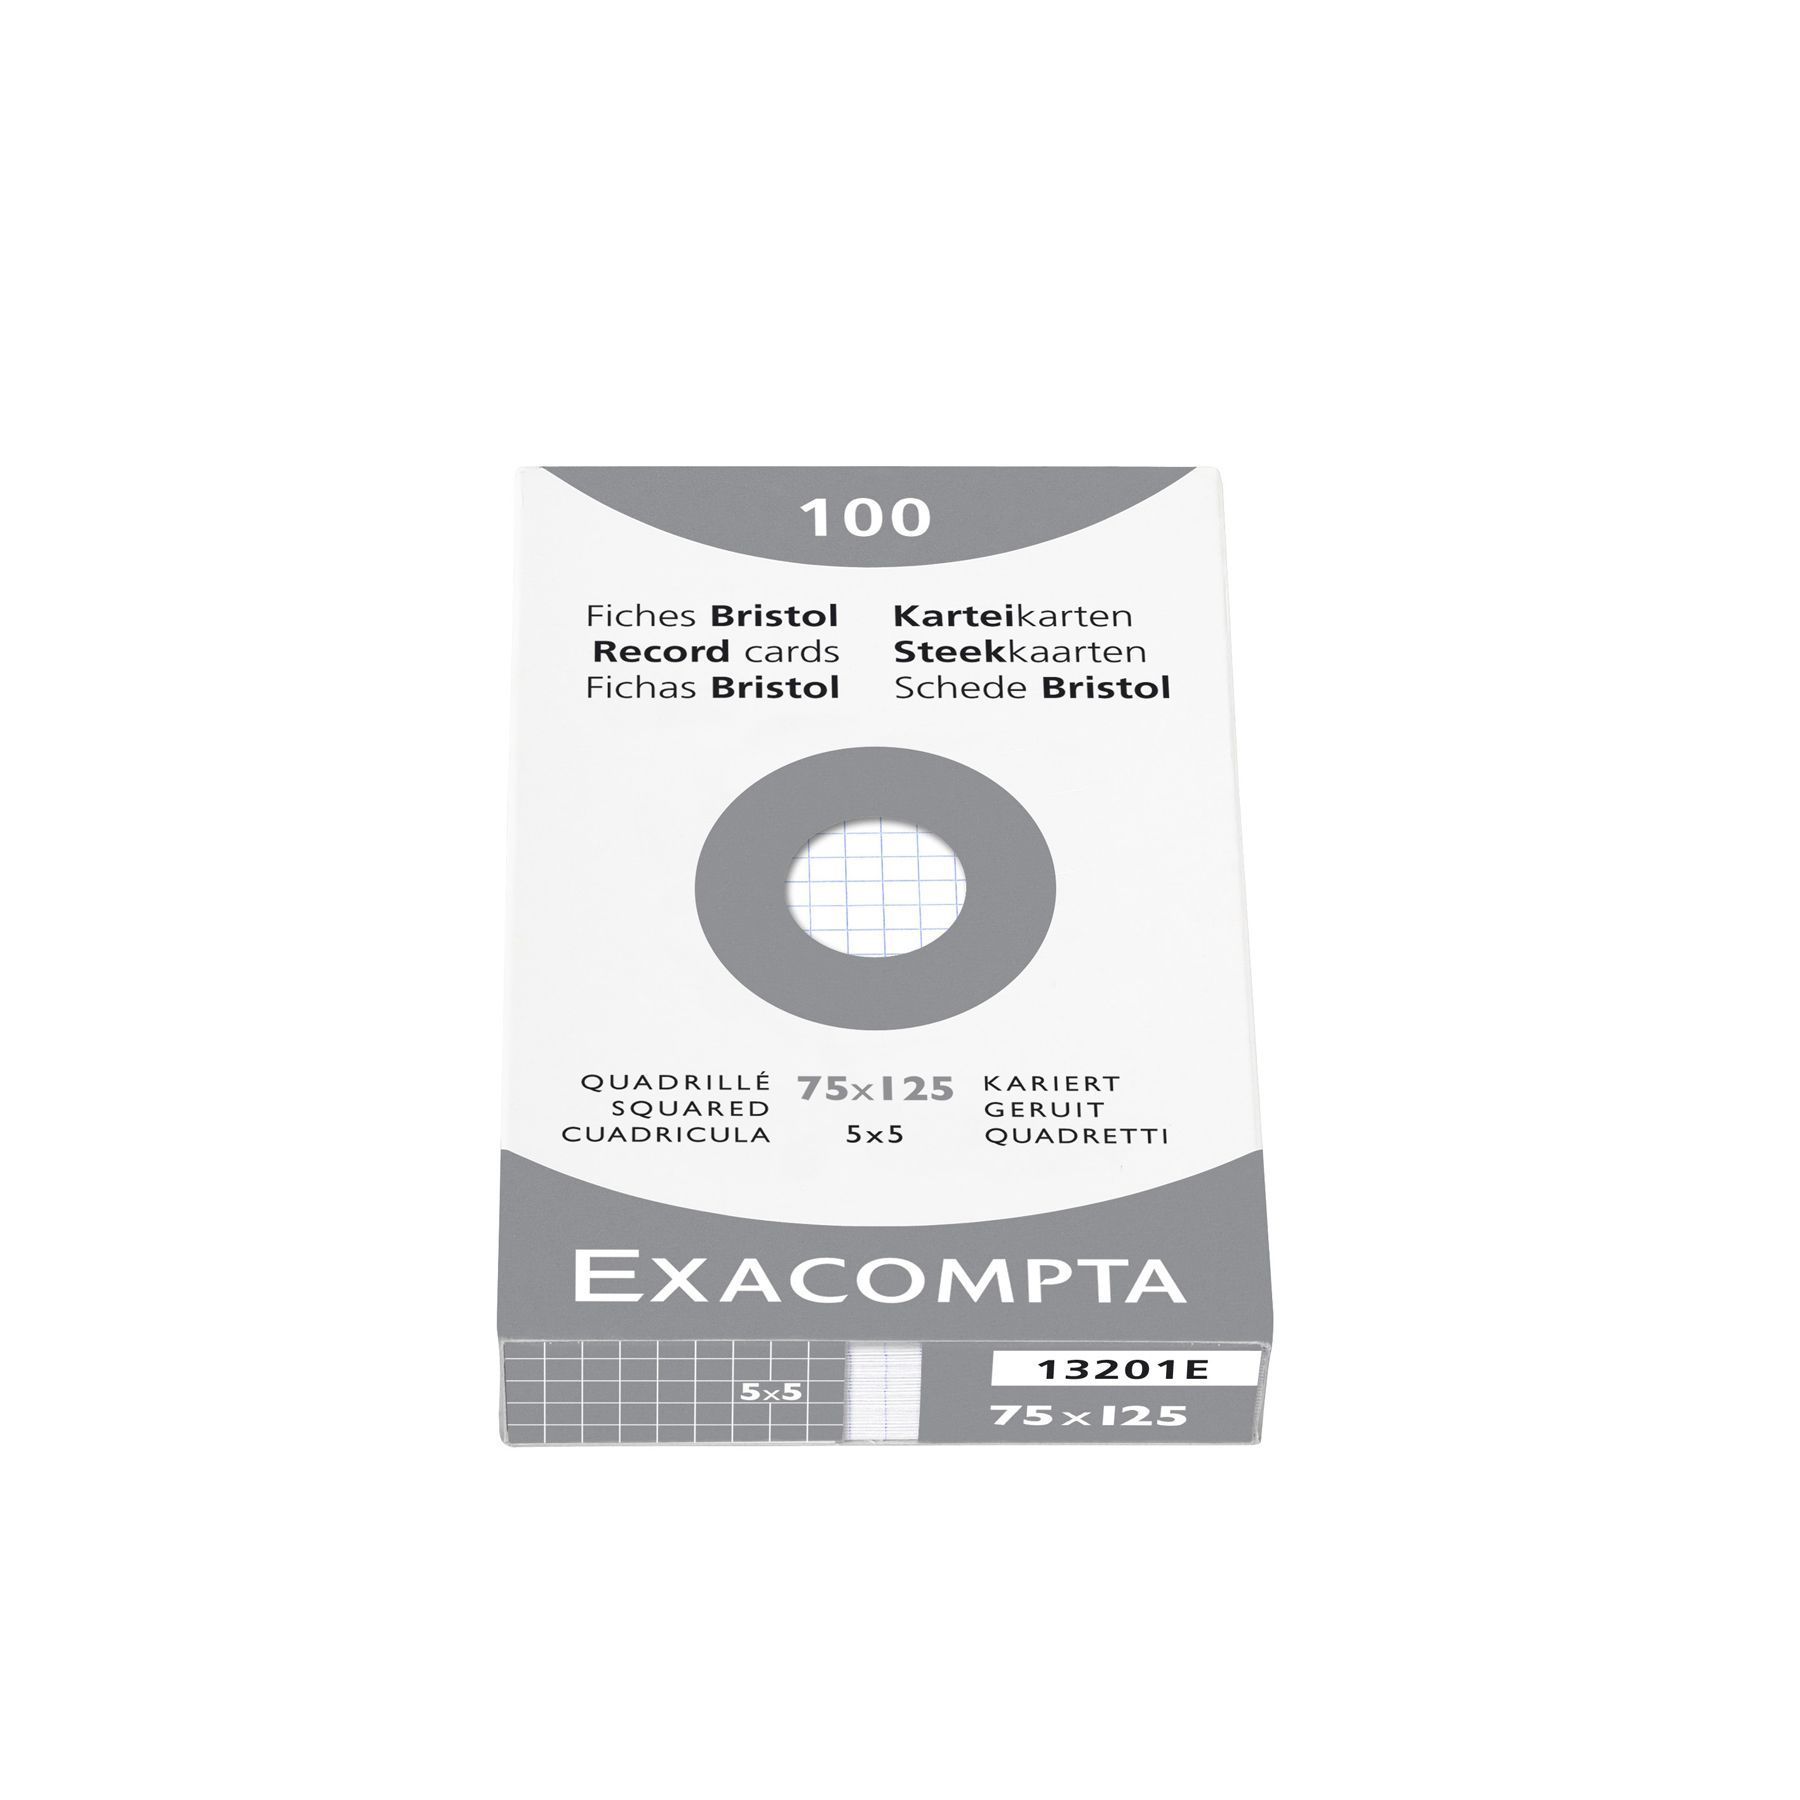 Exacompta Etui de 100 fiches bristol non perforées carte forte 205 g blanc  quadrillé 5x5 10x15 cm - prix pas cher chez iOBURO- p